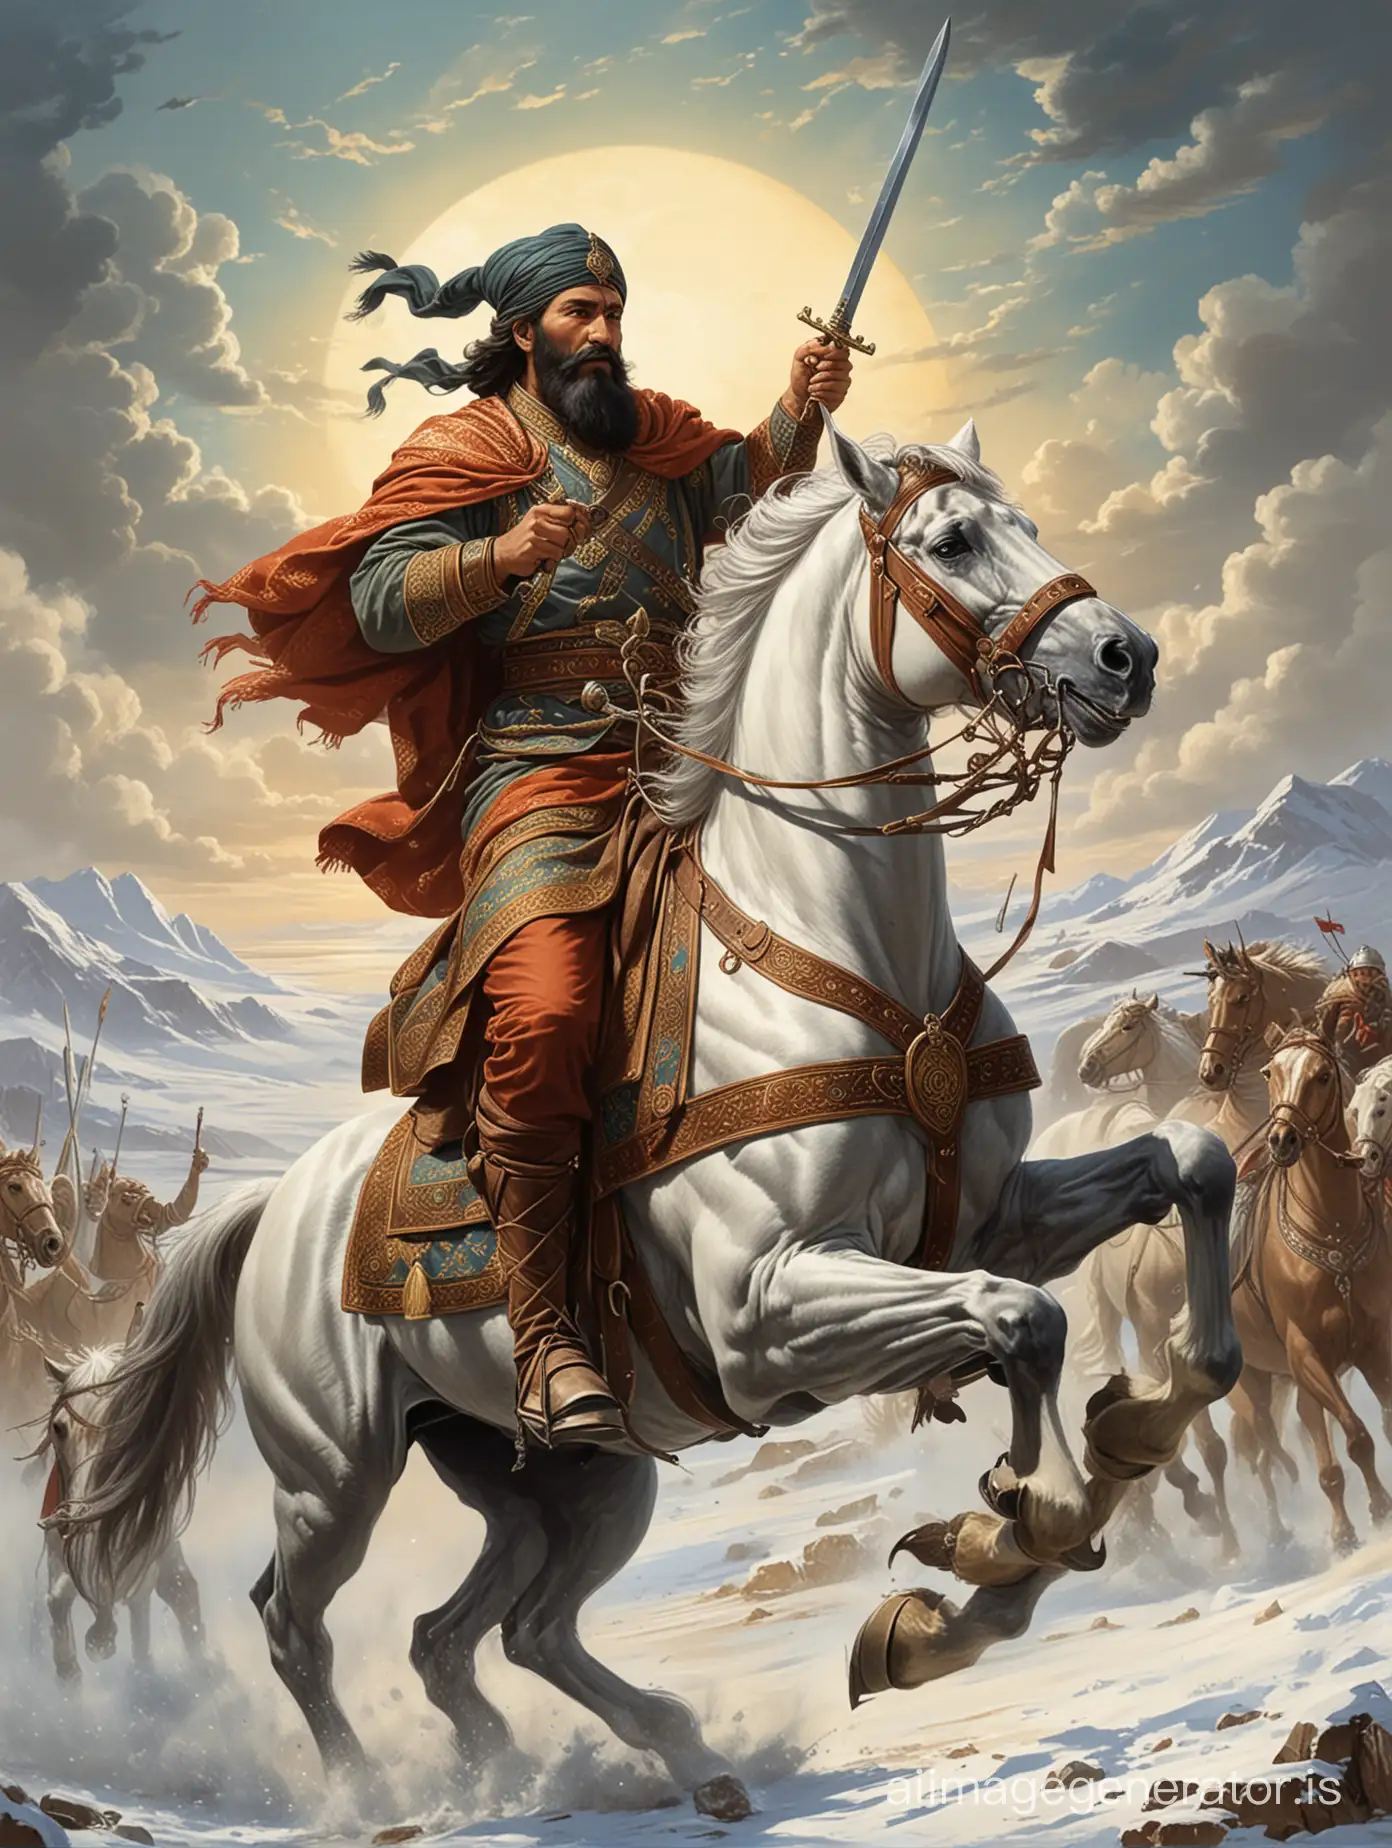 Jalaluddin-Manguberdi-Commander-of-Khorezm-Riding-into-Battle